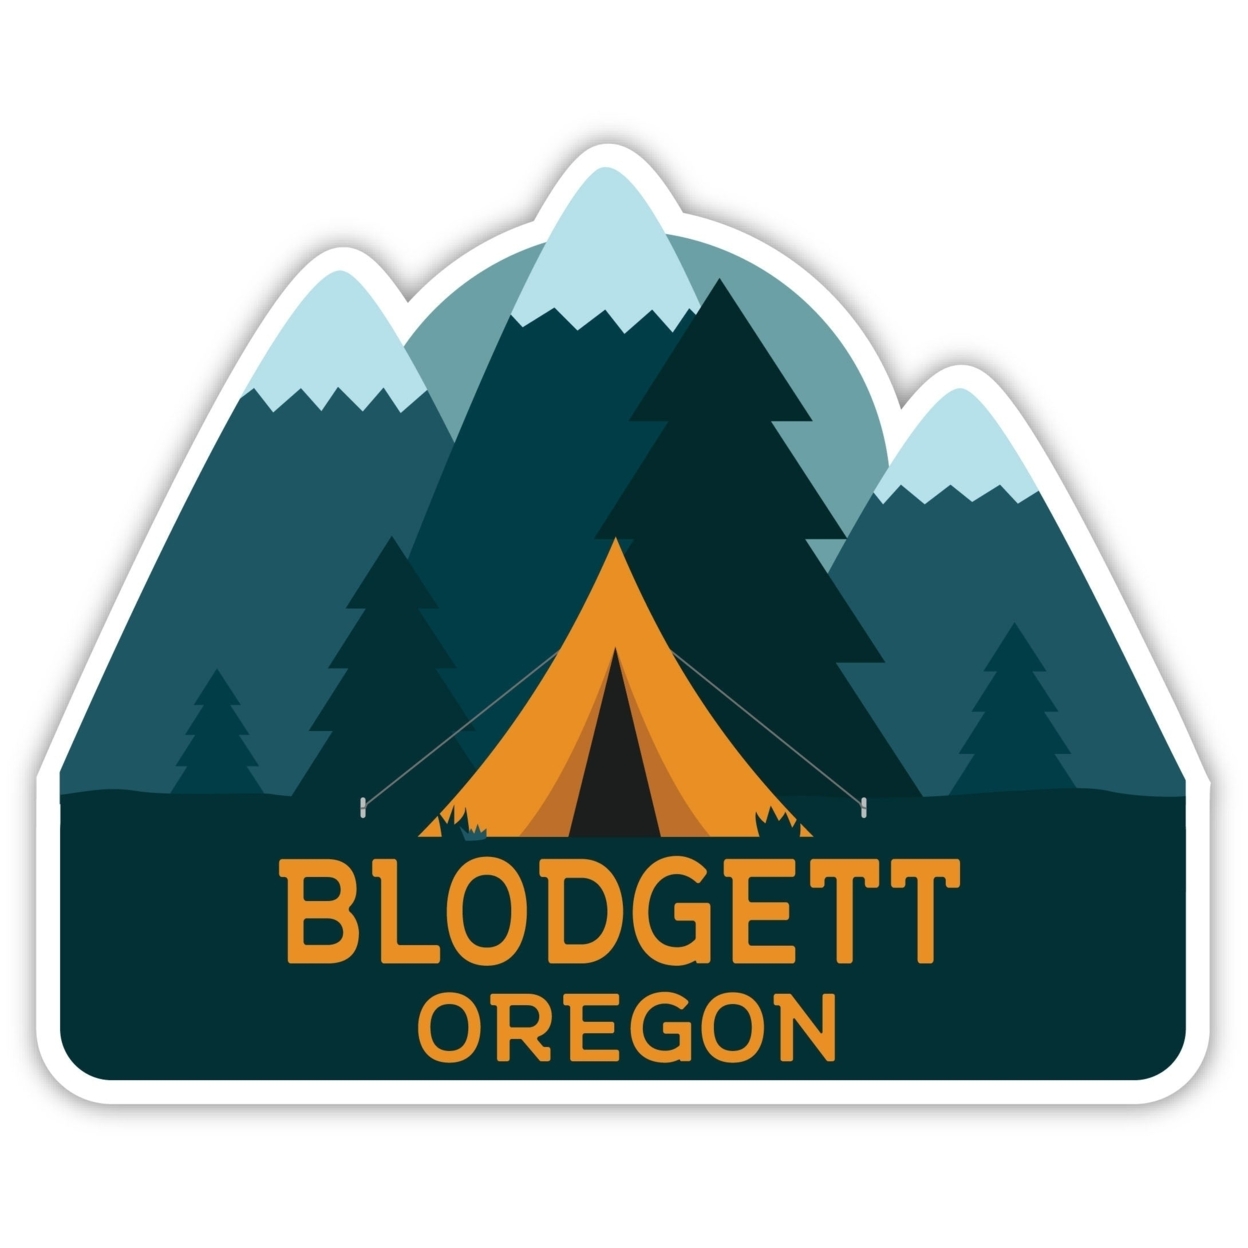 Blodgett Oregon Souvenir Decorative Stickers (Choose Theme And Size) - Single Unit, 12-Inch, Tent